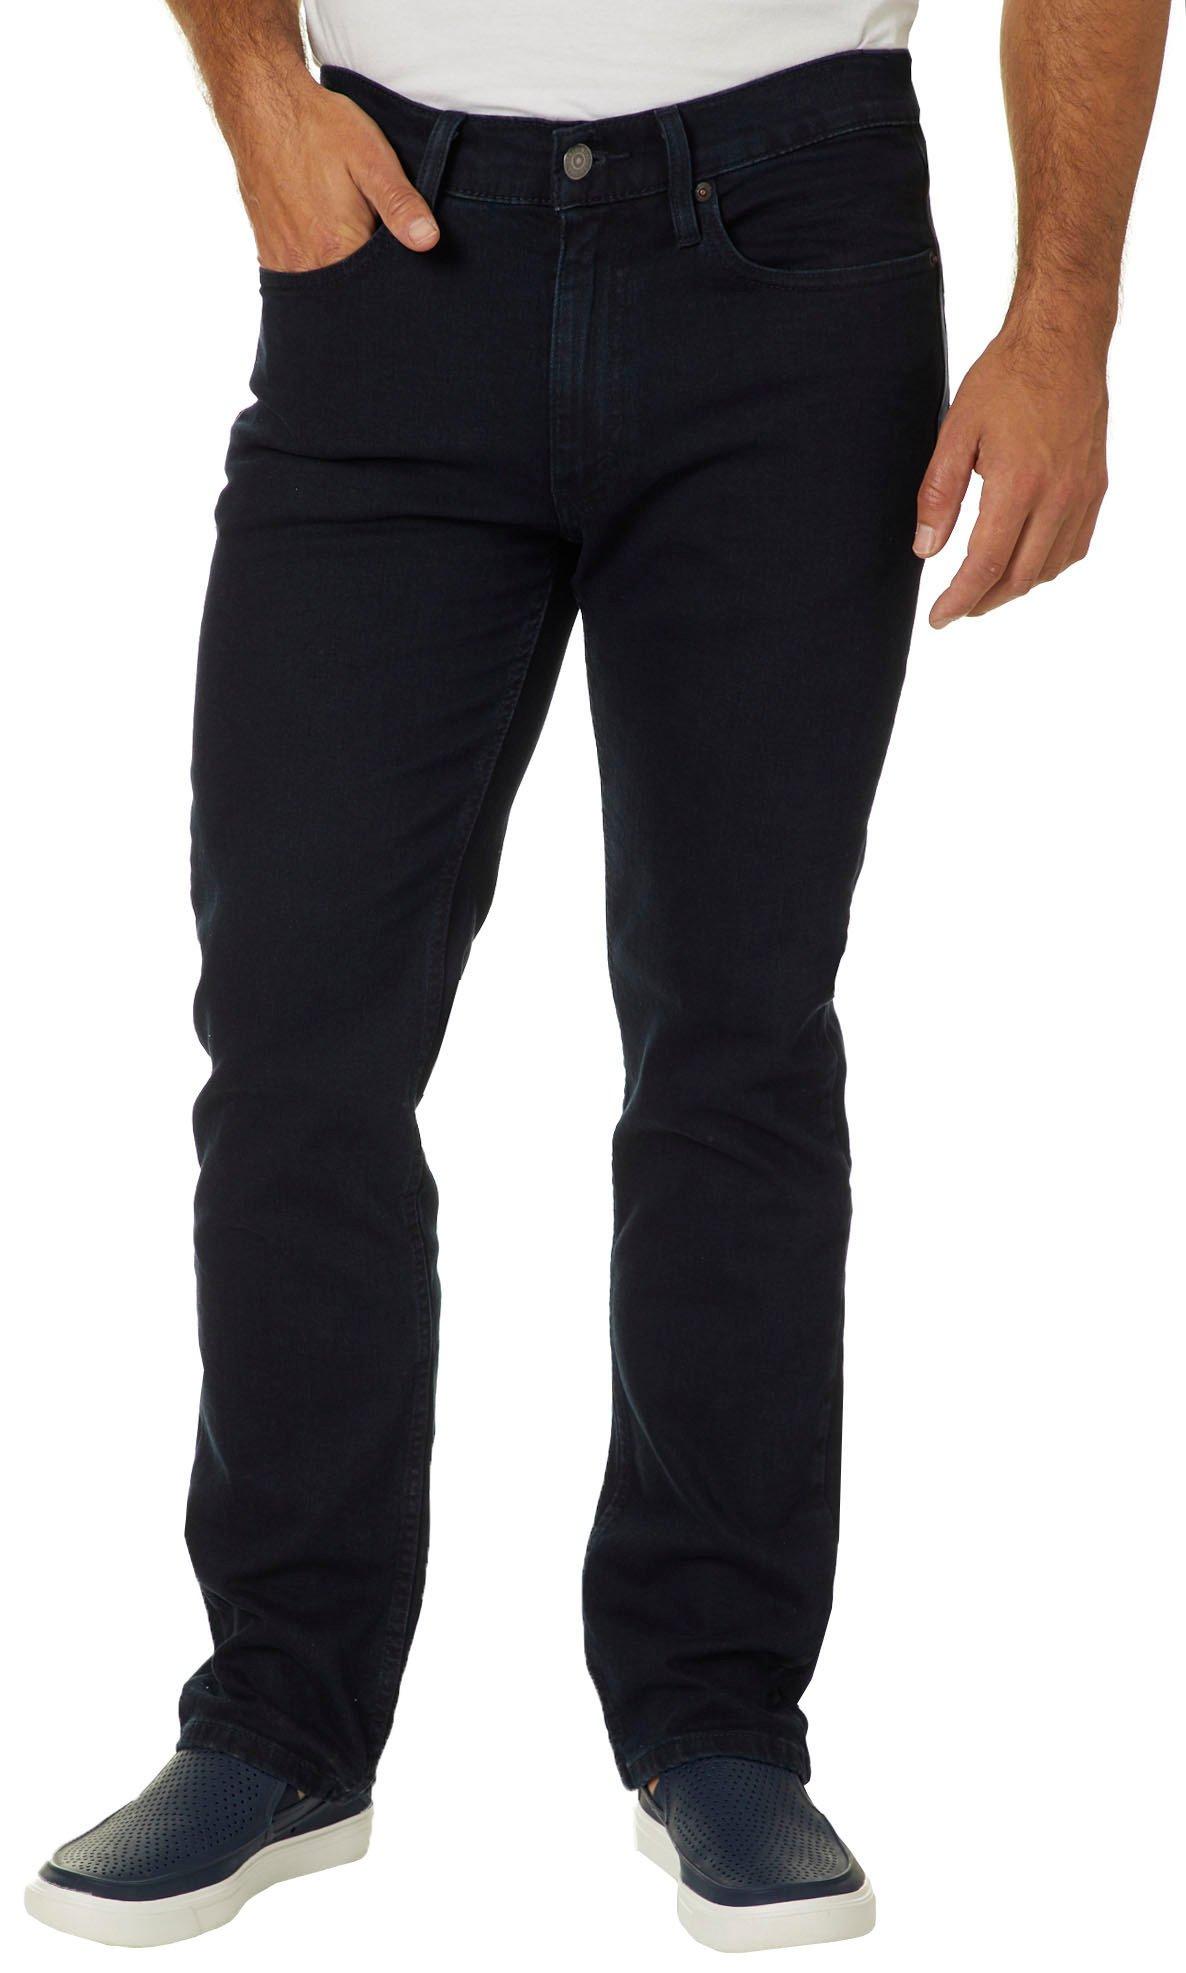 levi's men's 514 straight fit jeans